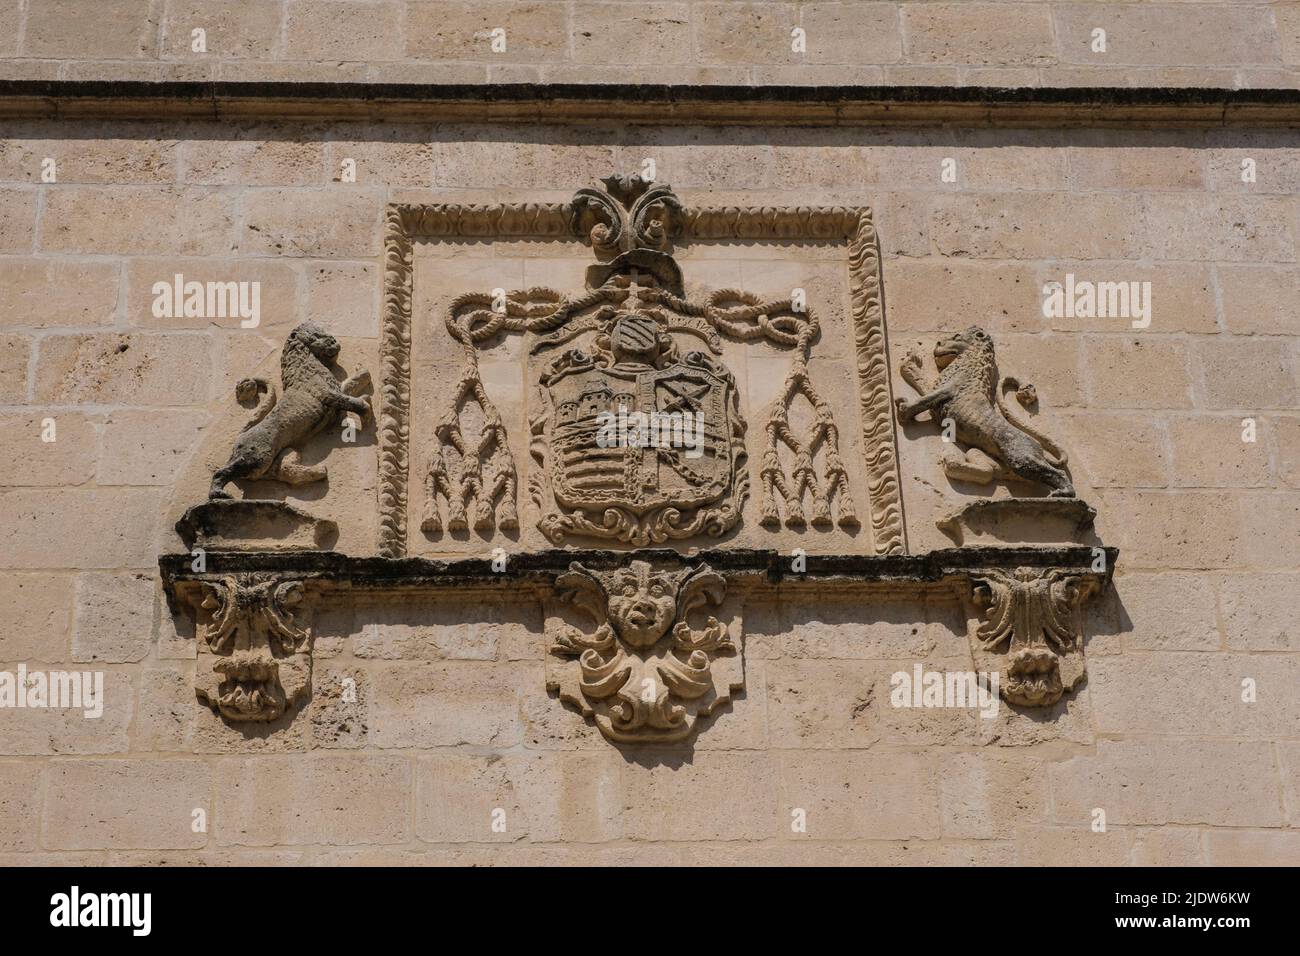 Spanien, Burgos. Kathedrale von Santa Maria, ein Weltkulturerbe. Wappen an der Außenfassade. Stockfoto